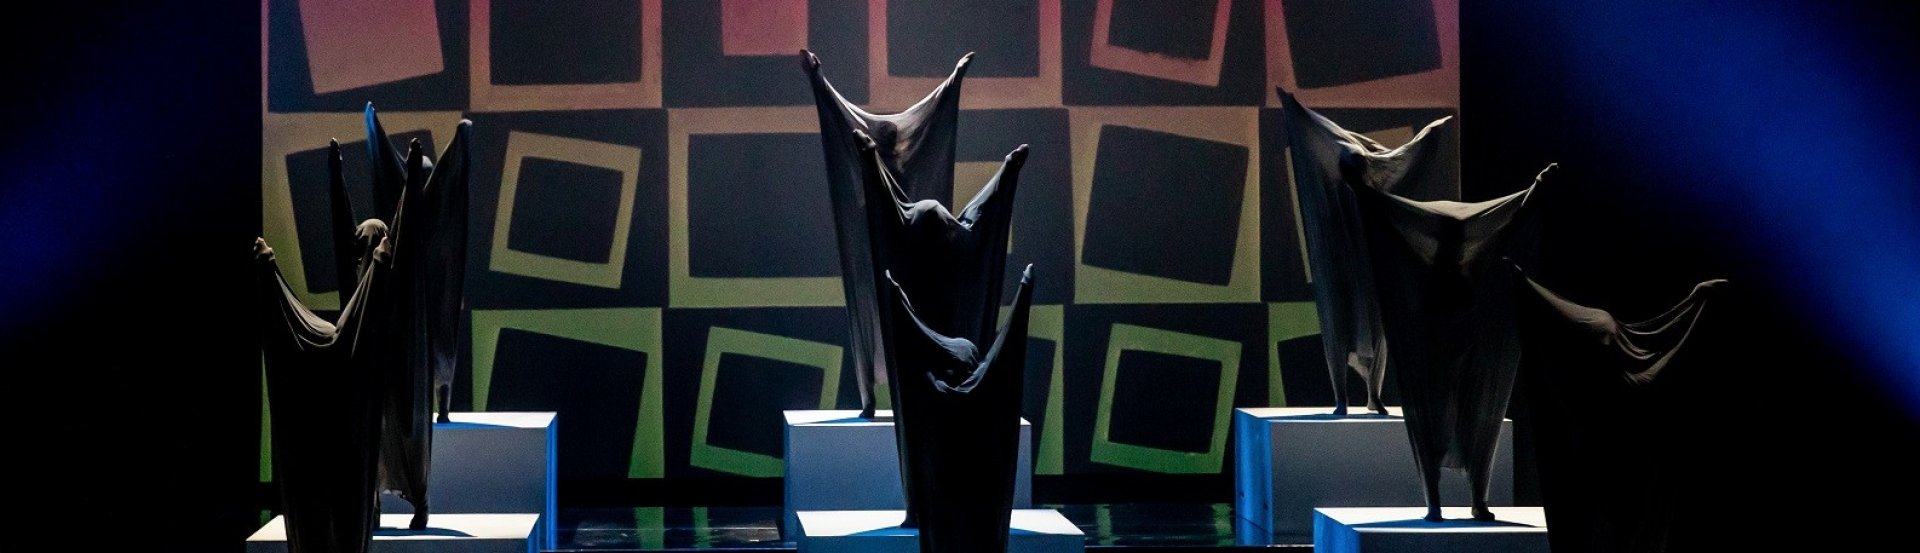 Vasarely-etűdök című előadás kiemelt képe a Pécsi Nemzeti Színházból